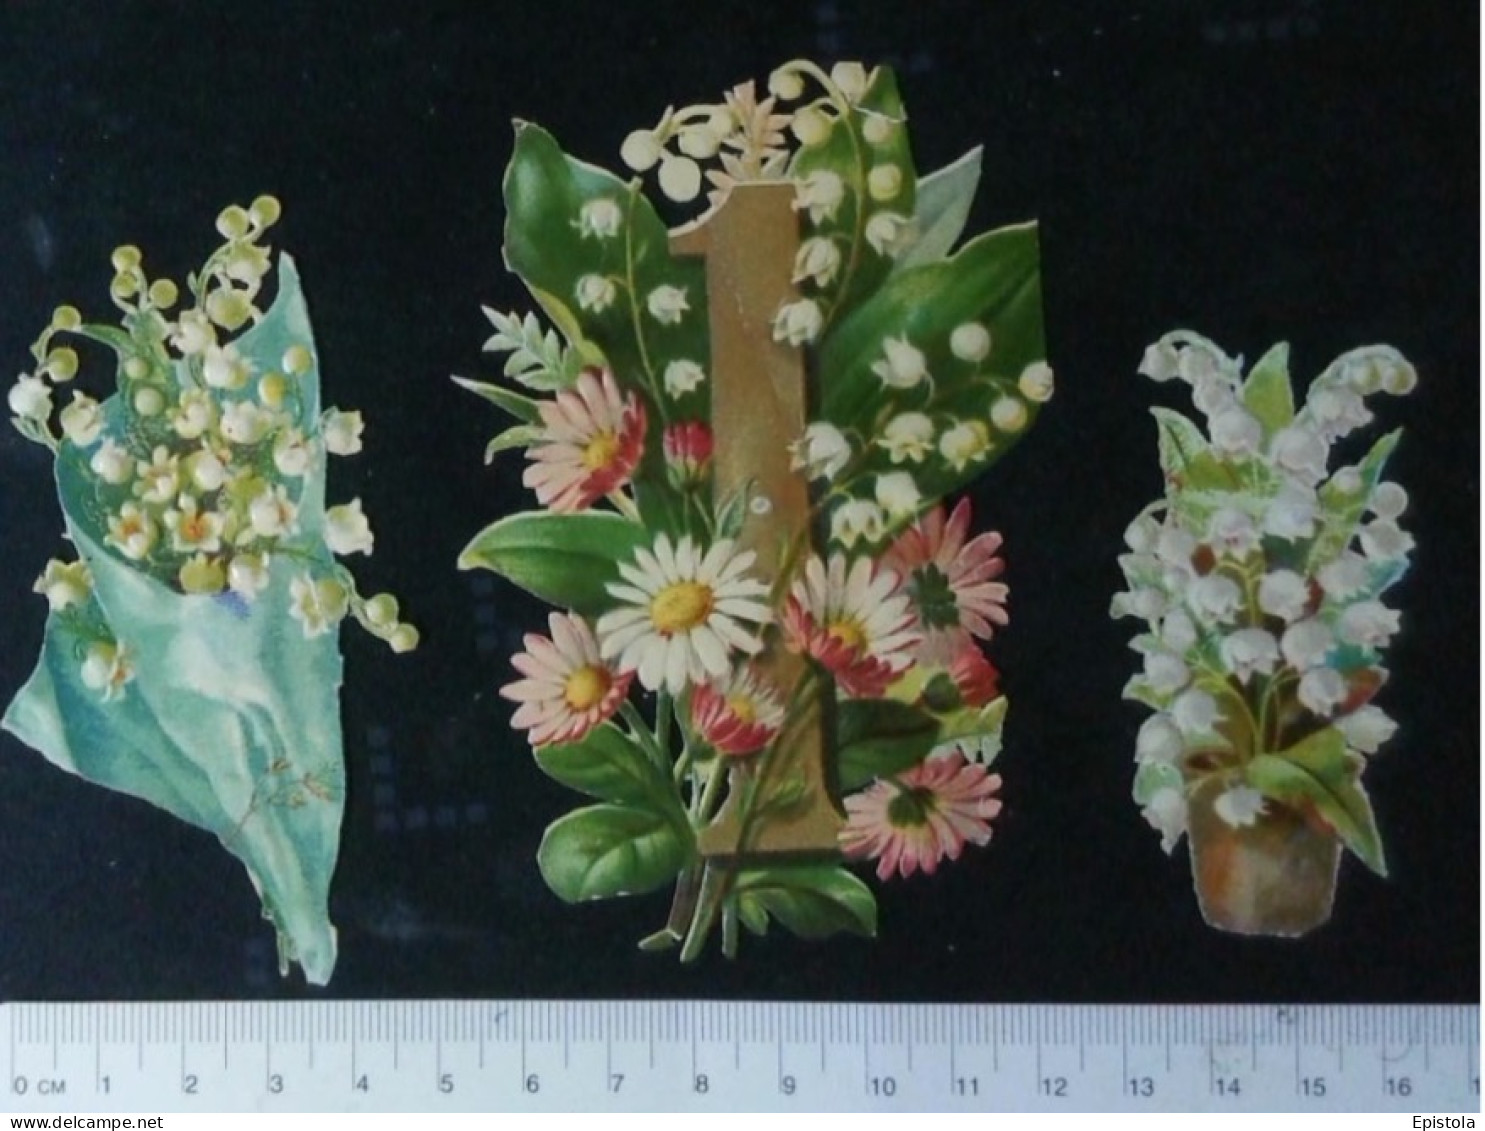 ►  Lot Muguet Du Premier Mai - Découpis époque Victorienne XIXe "Victorian Die-cuts" - Flowers